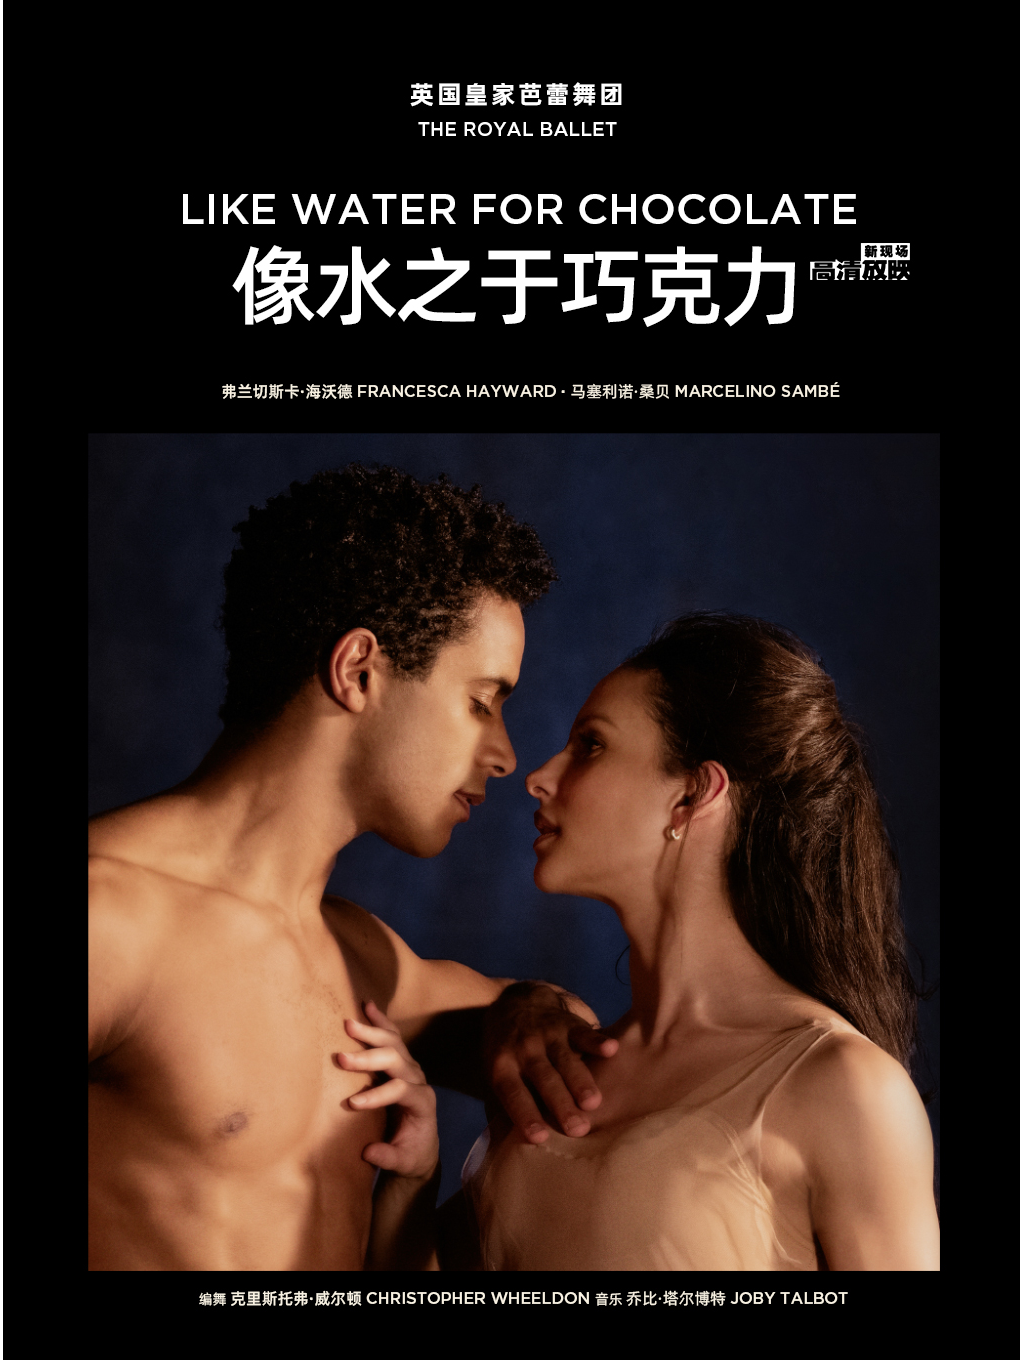 北京【高清放映】像水之于巧克力